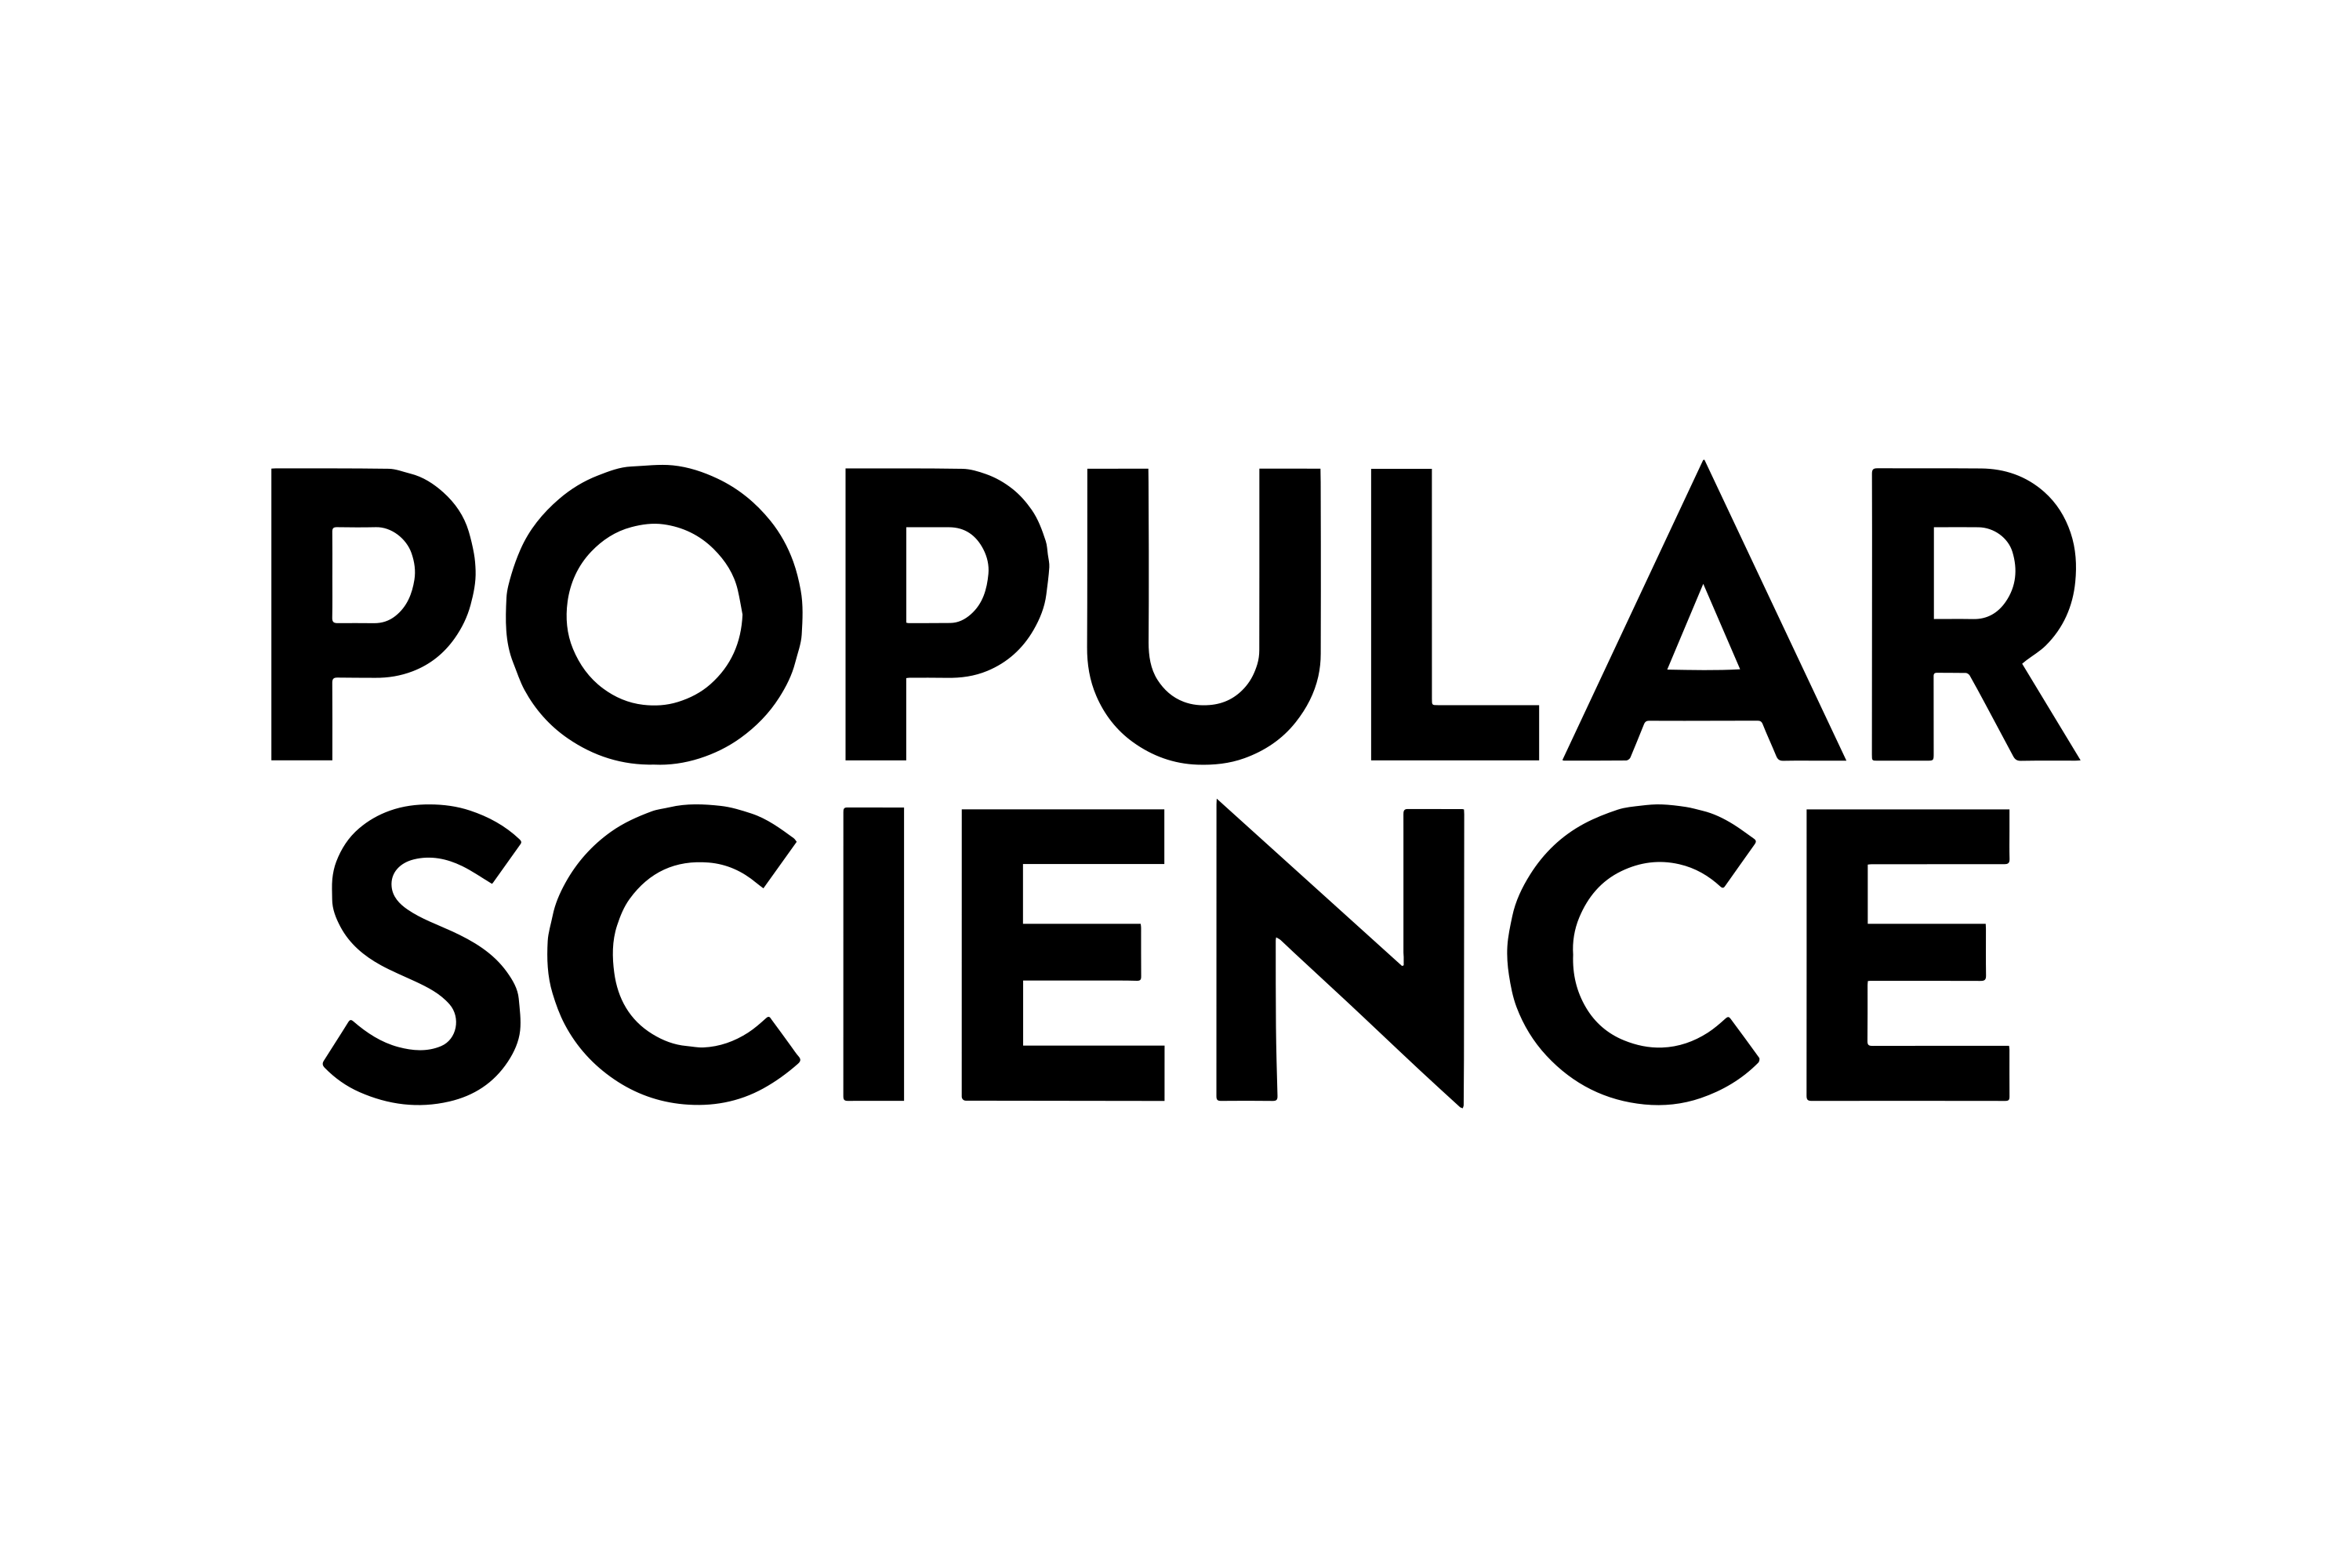 Download Popular Science (PopSci) Logo in SVG Vector or PNG File Format